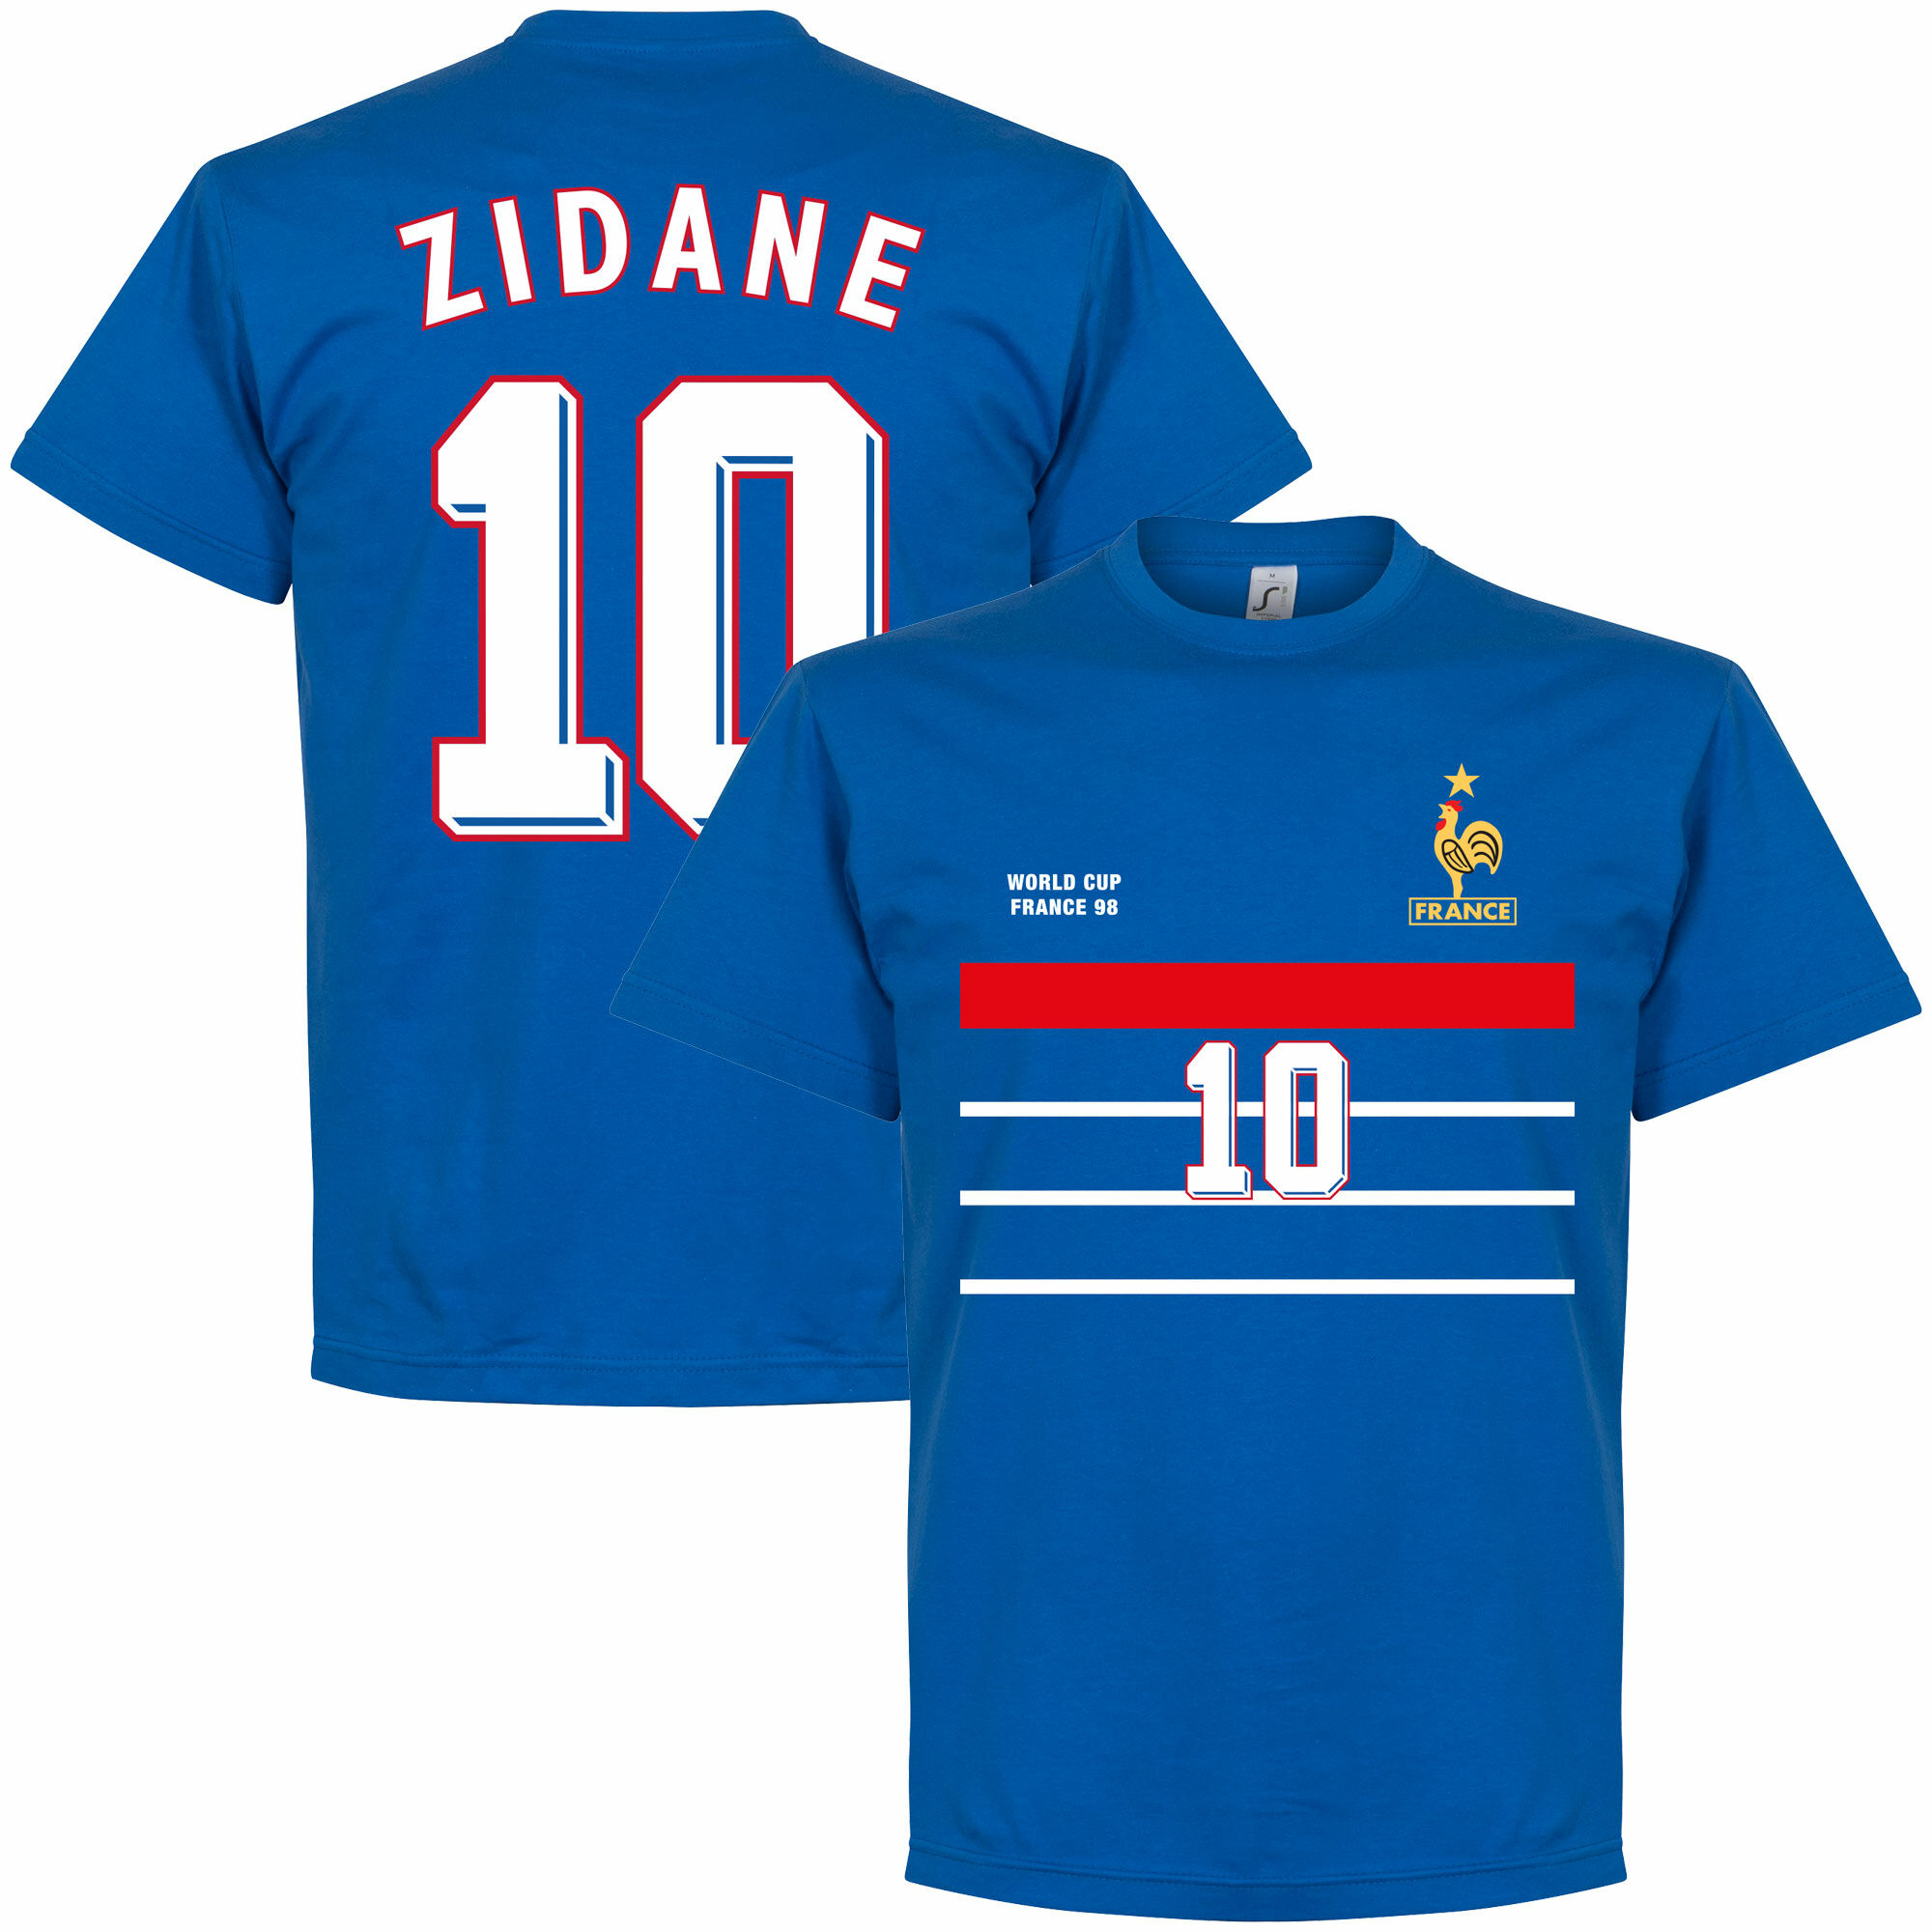 Francie - Tričko - Zinédine Zidane, 1998, číslo 10, modré, retrostyl